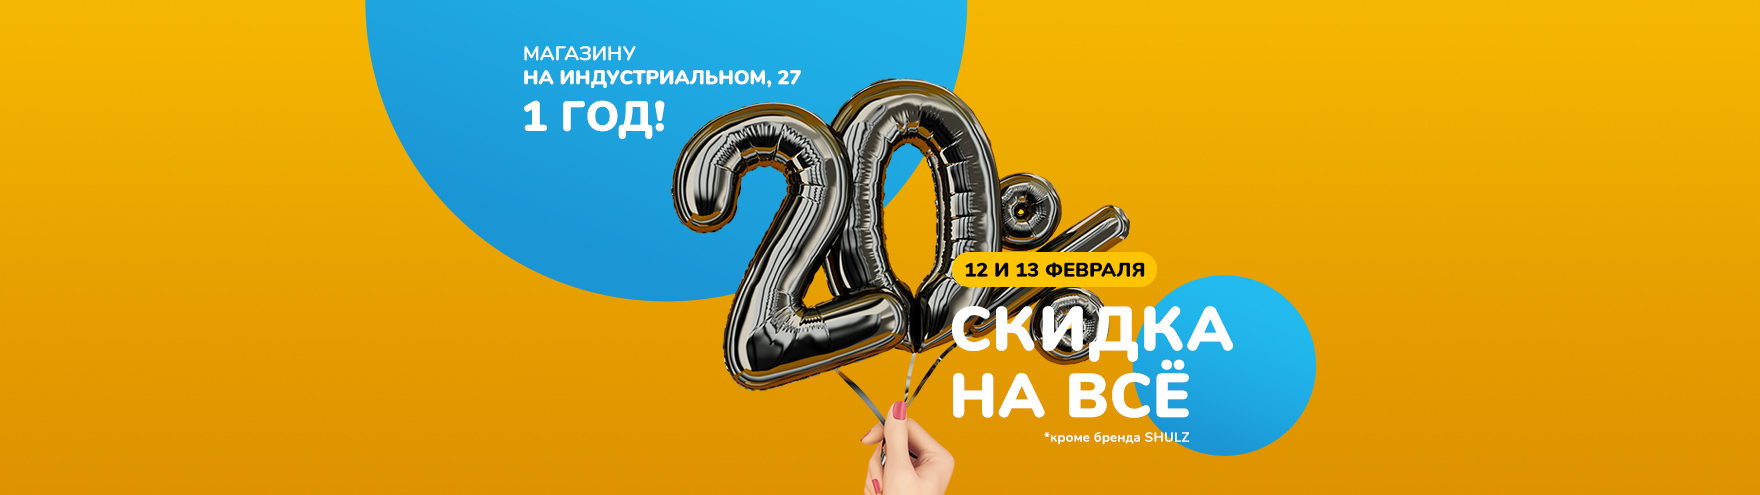 День рождения магазина ВелоДрайв-Индустриальный